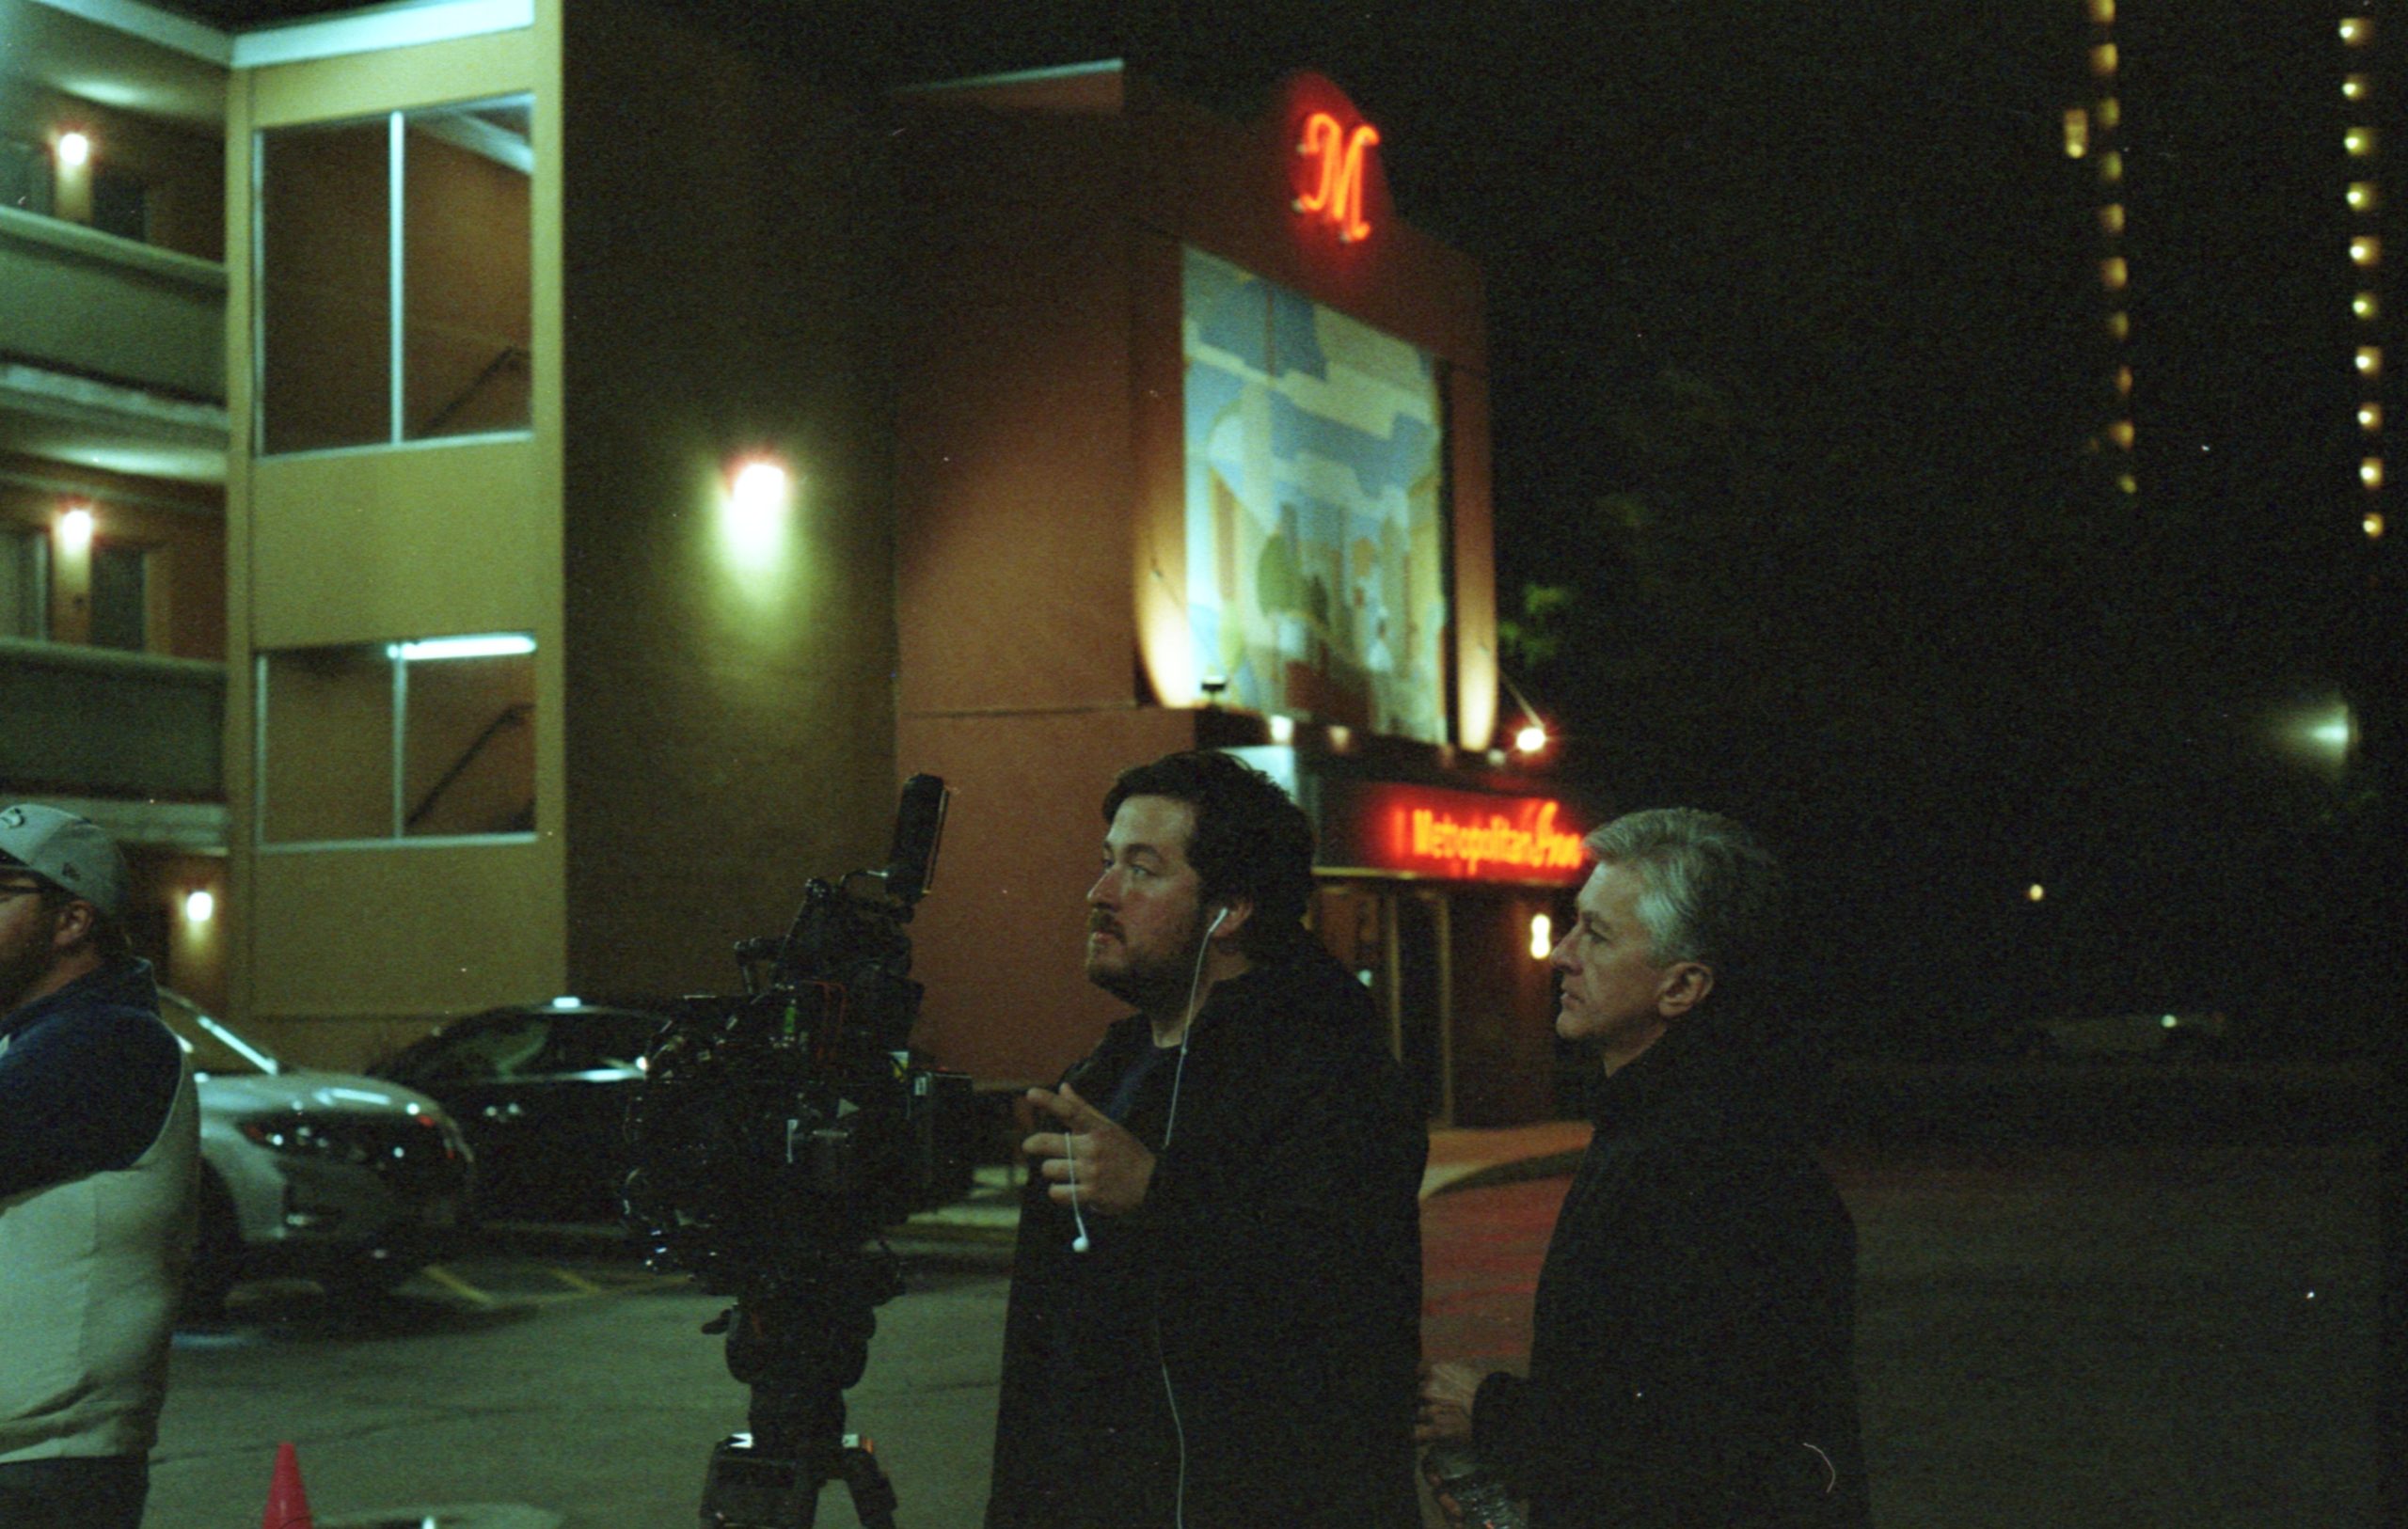 O diretor Jonathan segura a câmera, olhando para o que ela filma. Ele está ao lado de um homem mais velho e grisalho, eles parecem estar num estacionamento, com carros ao fundo e um visor vermelho na entrada de algum estabelecimento no fundo. 